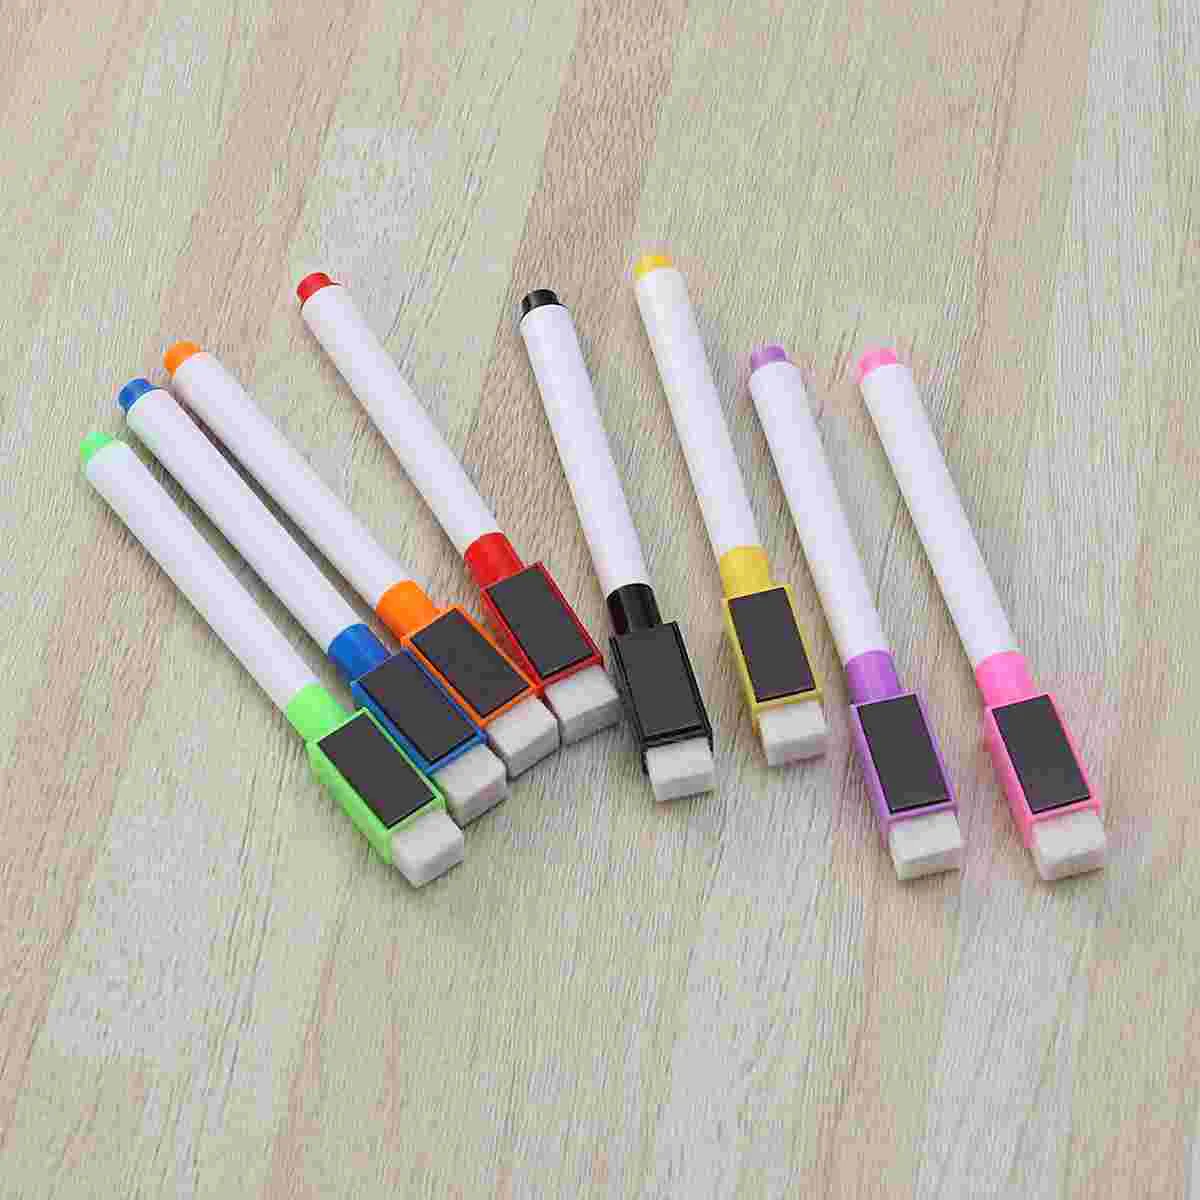 

8 шт. Магнитная цветная ручка для белой доски, черный, белый цвет, встроенный ластик, школьные принадлежности, детская ручка для рисования (розовый,